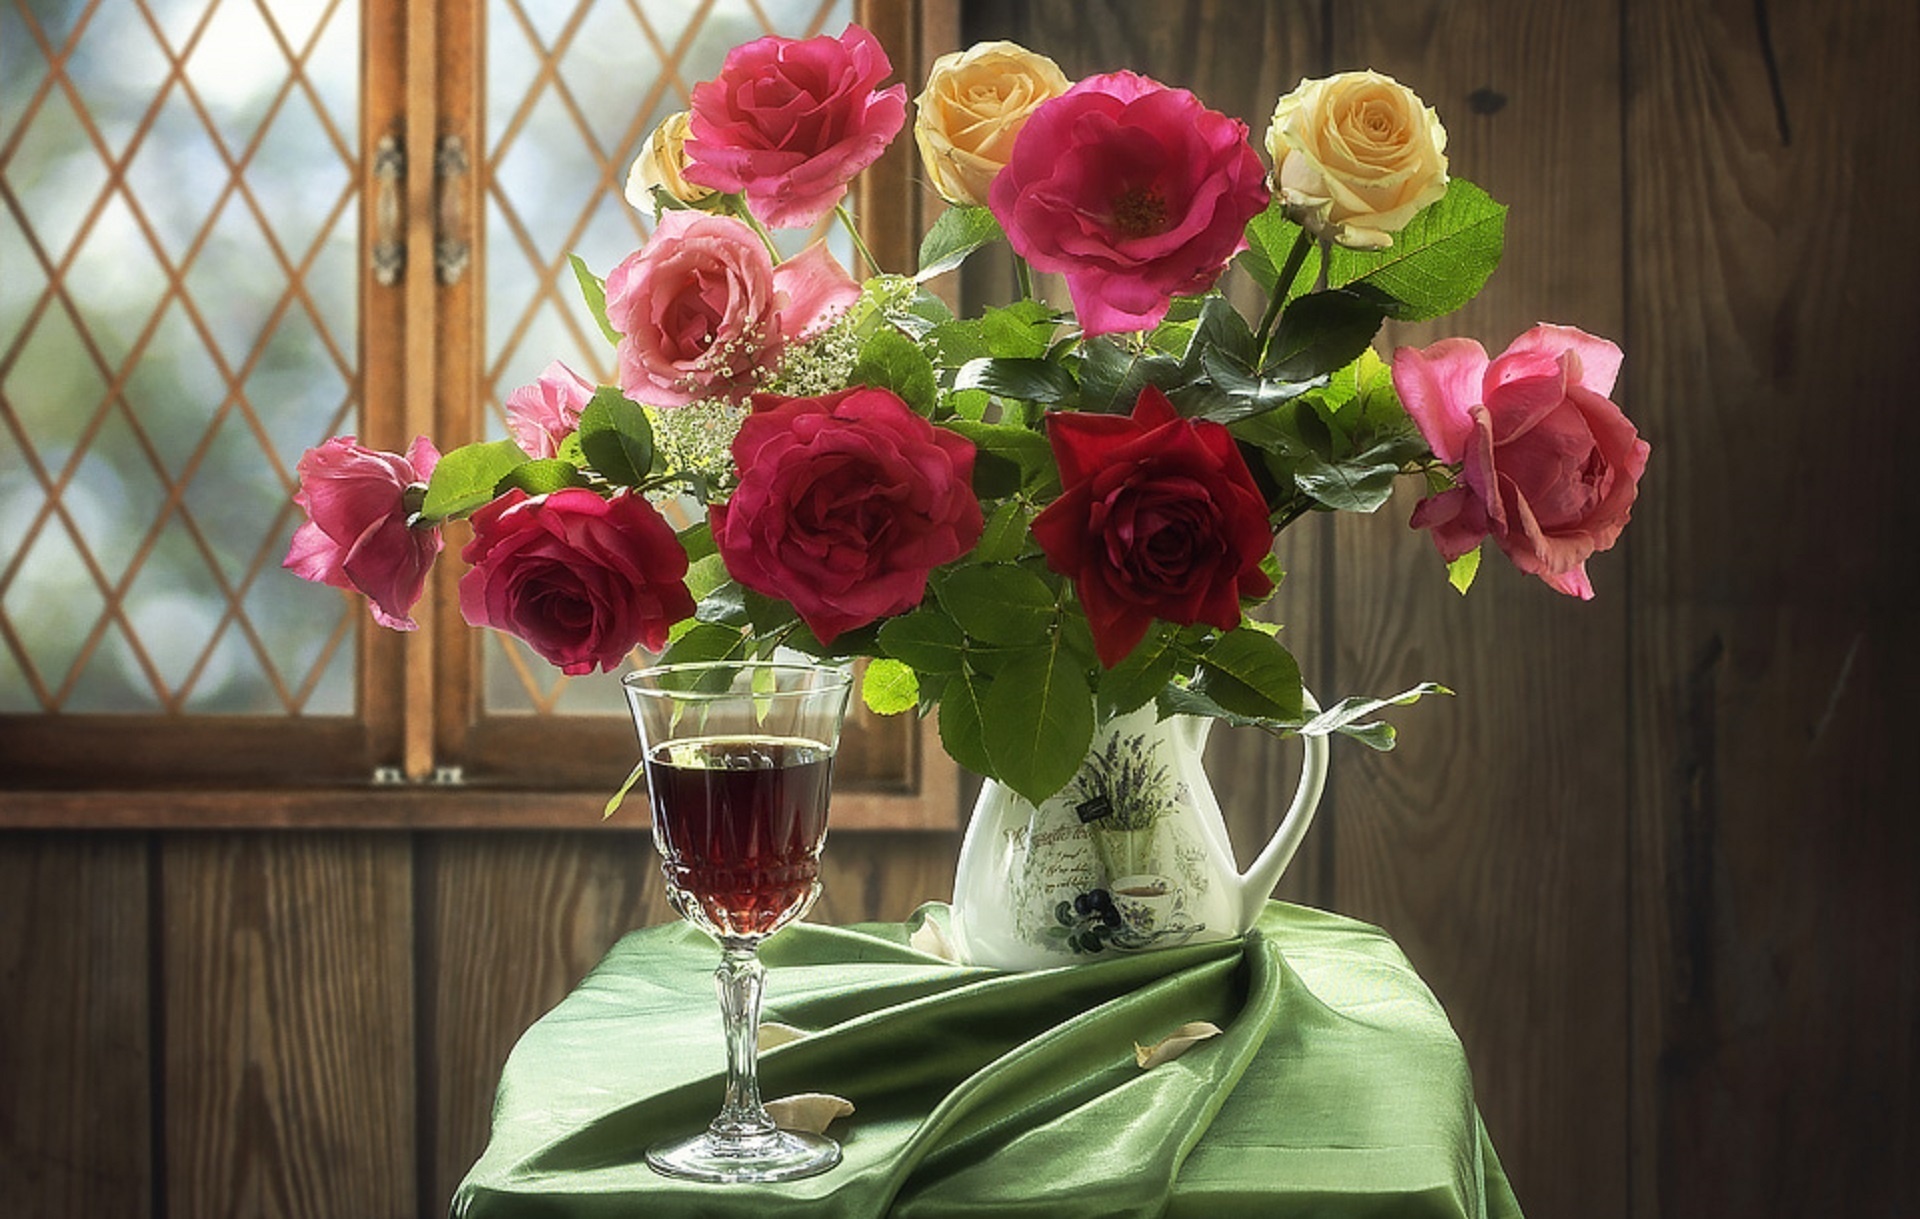 Букеты роз в вазе на столе. Красивый букет в вазе. Розы в вазе. Шикарные цветы в вазе. Цветы в вазе на столе.